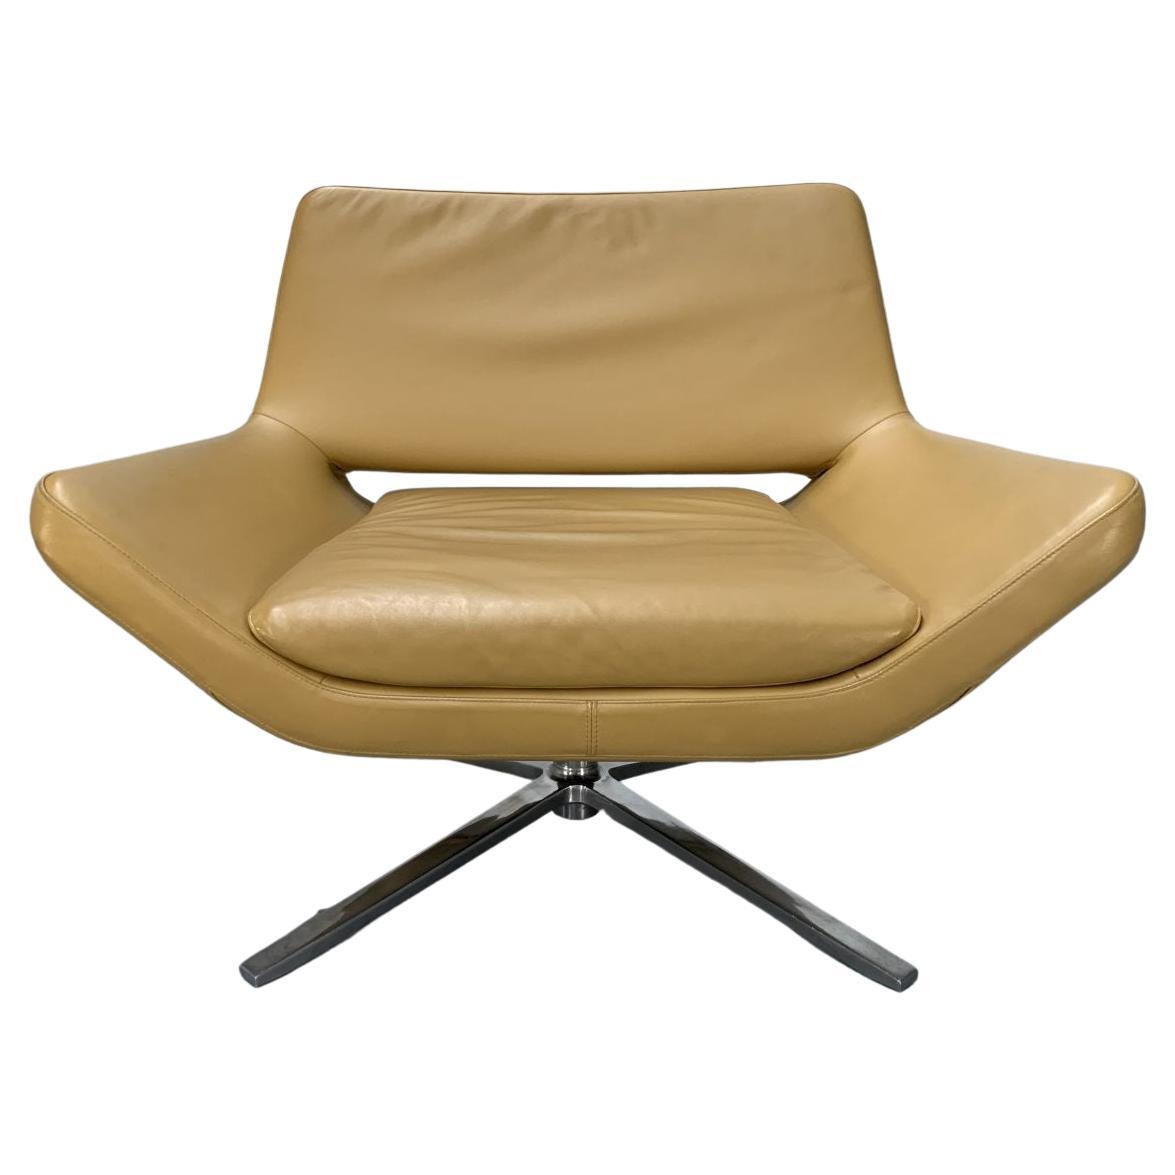 B&B Italia “Metropolitan ME84” Armchair In Tan “Gamma” Leather 4 Available